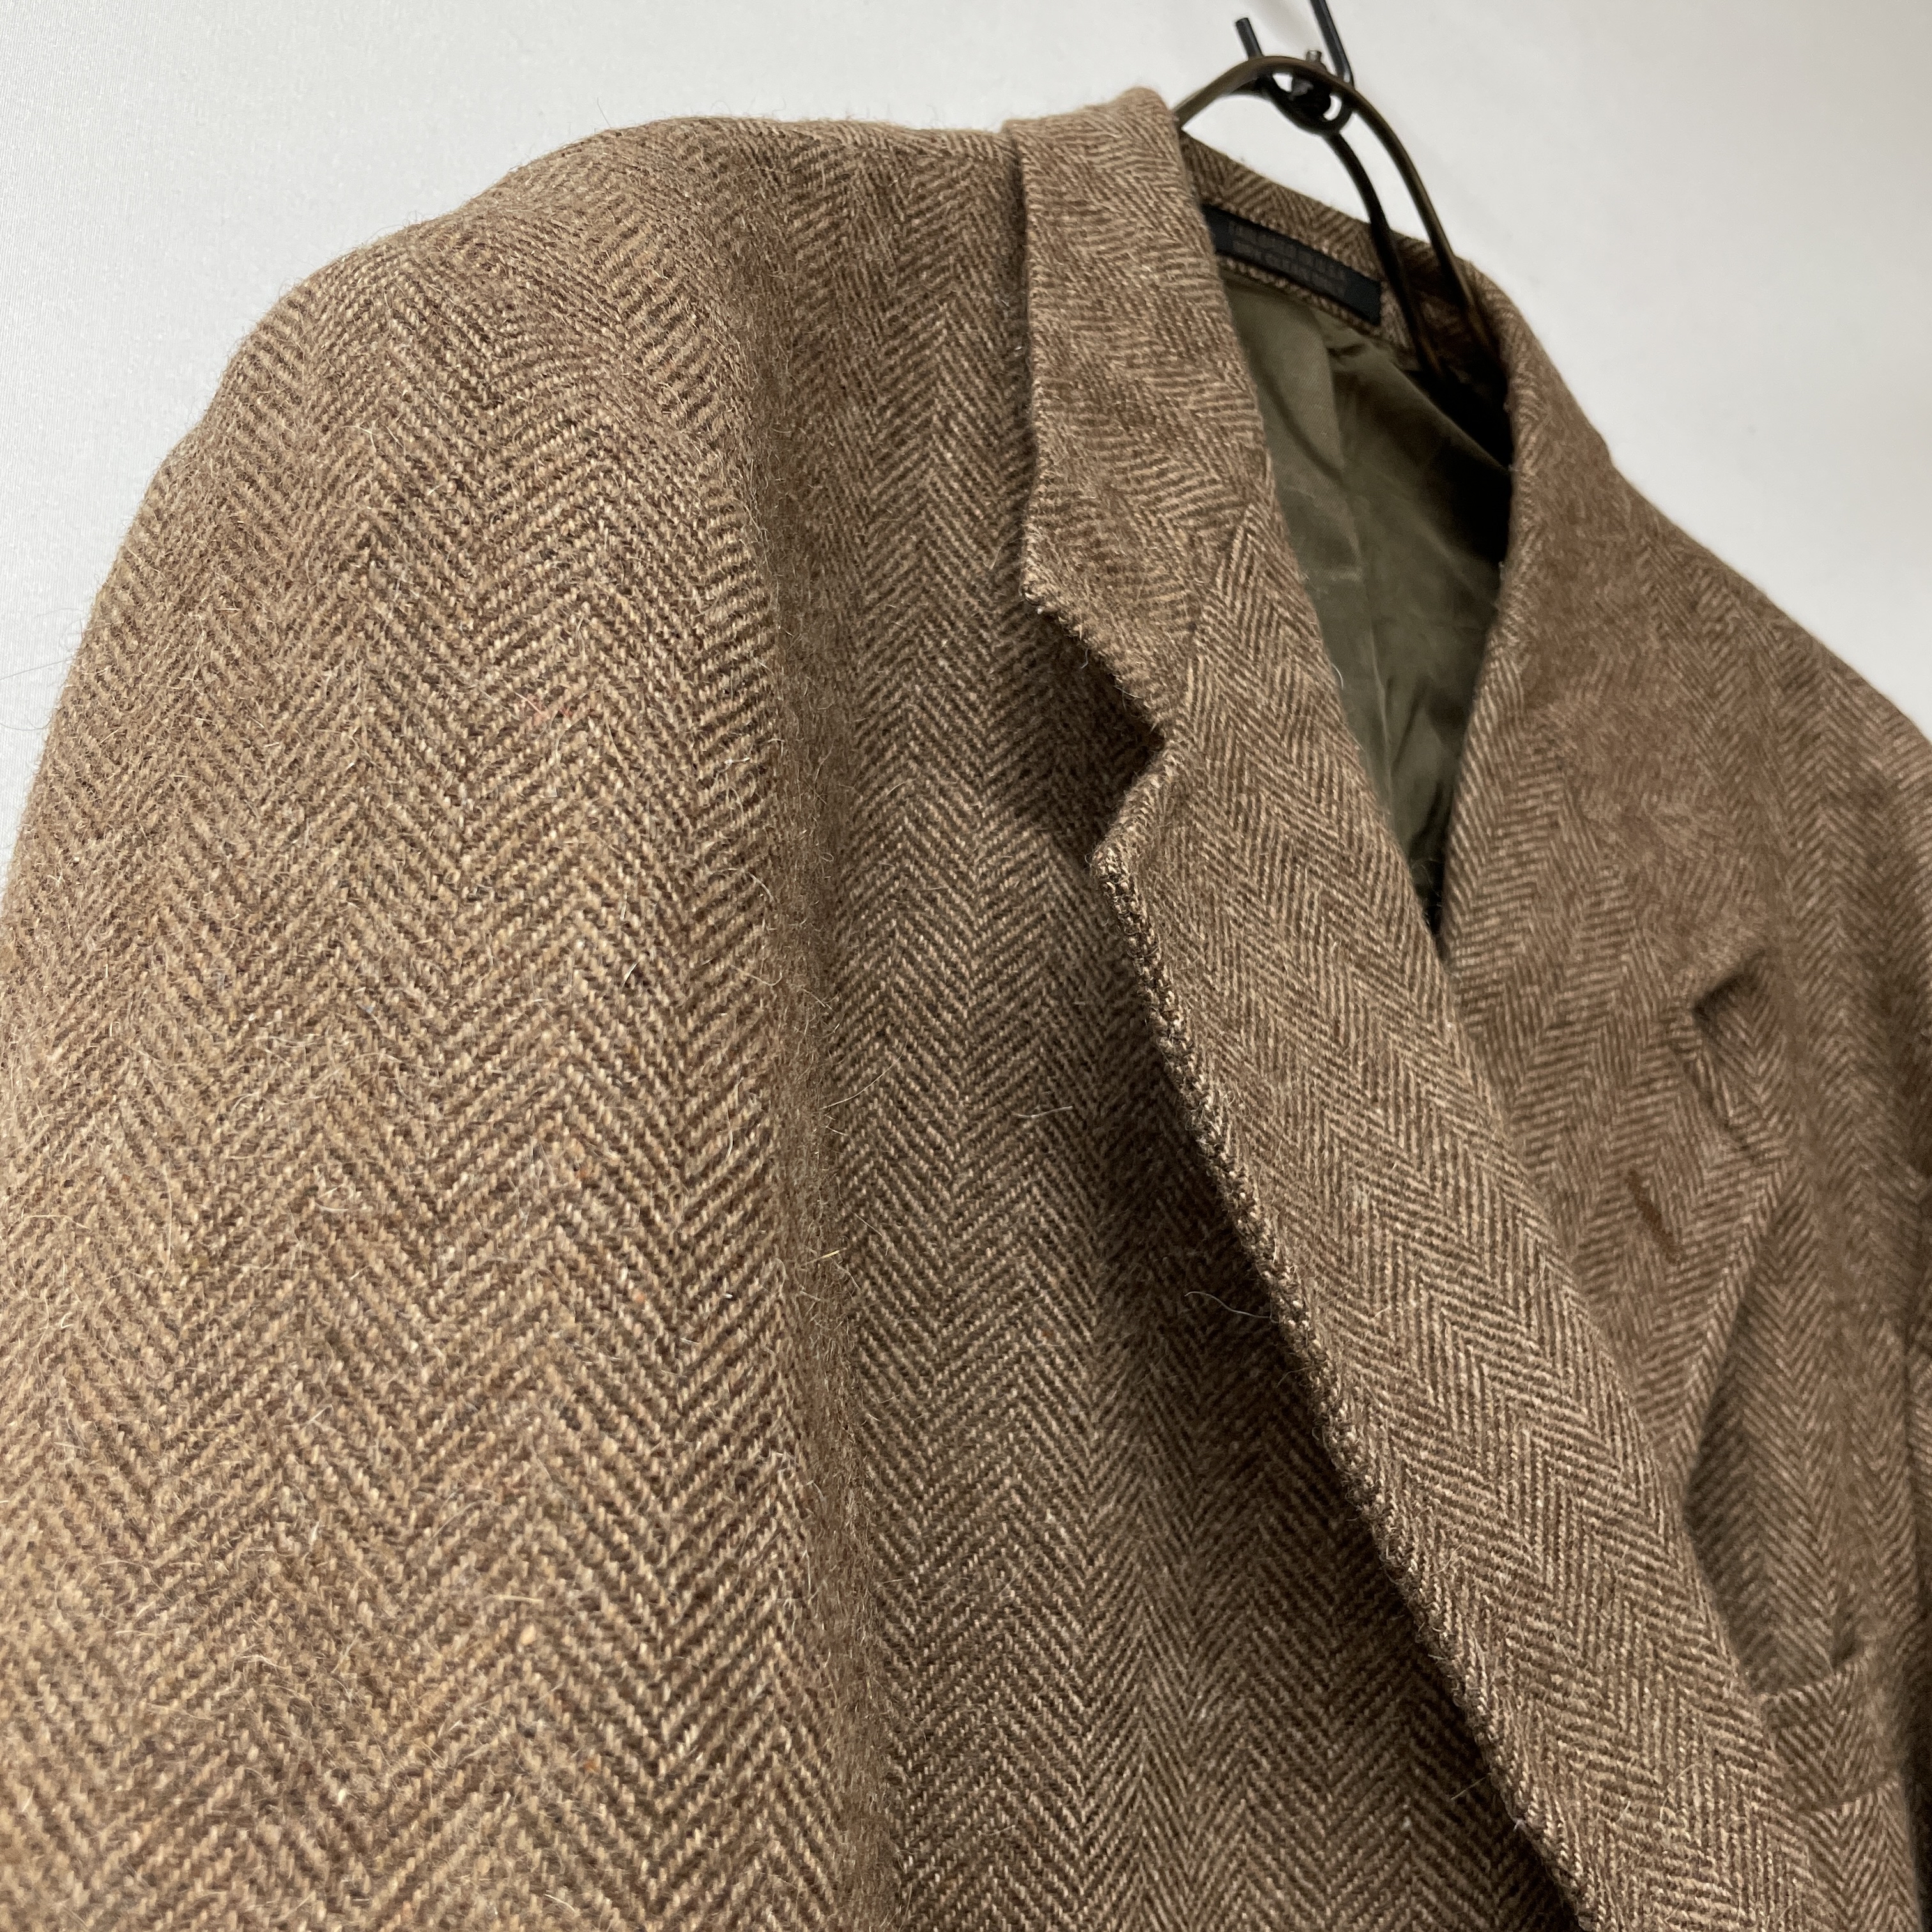 vintage tailored jacket ヘリンボーン